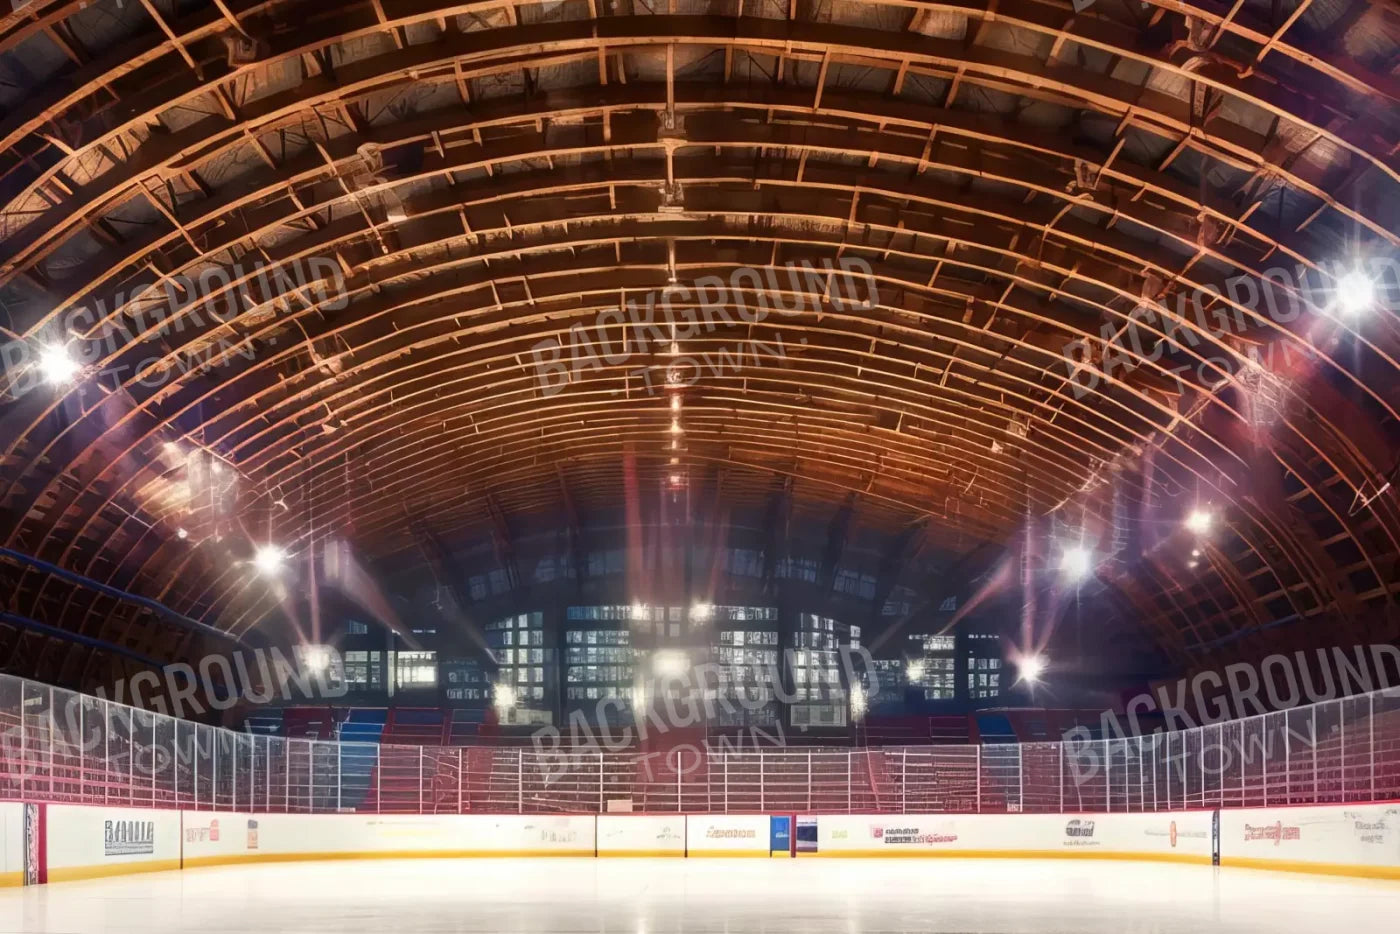 The Art Of Hockey Iii 12’X8’ Ultracloth (144 X 96 Inch) Backdrop